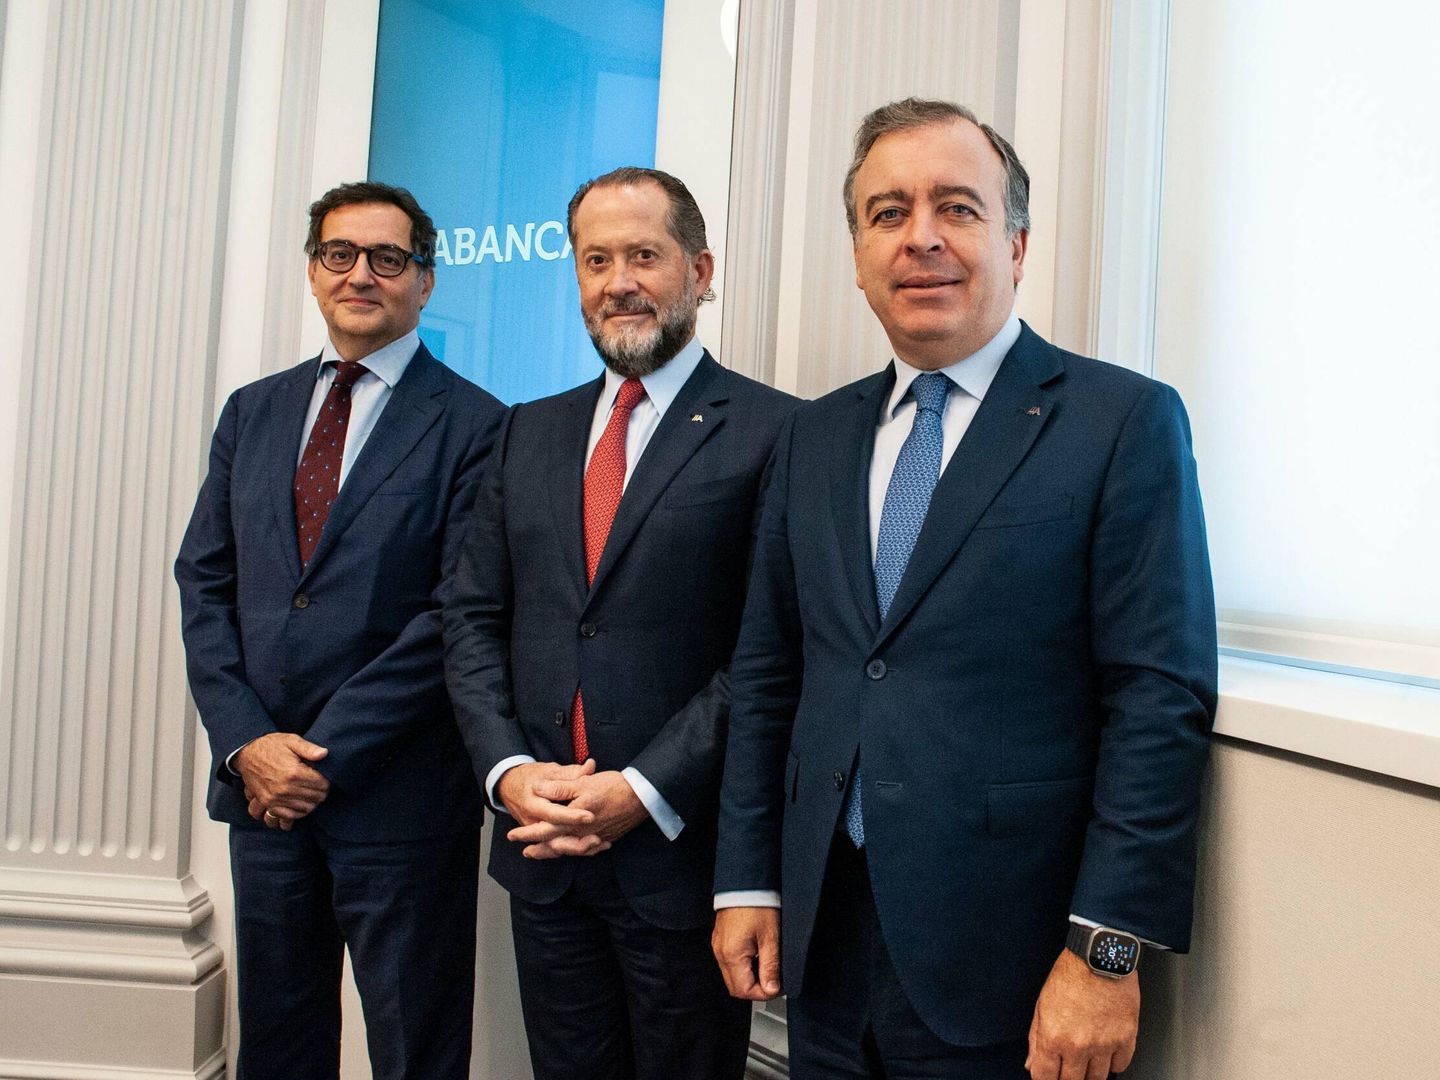 El representante de Crédit Mutuel, Alexandre Saada (i), el presidente de Abanca, Juan Carlos Escotet (c), y el CEO de Abanca, Francisco Botas (d), en la firma del acuerdo. (Abanca)